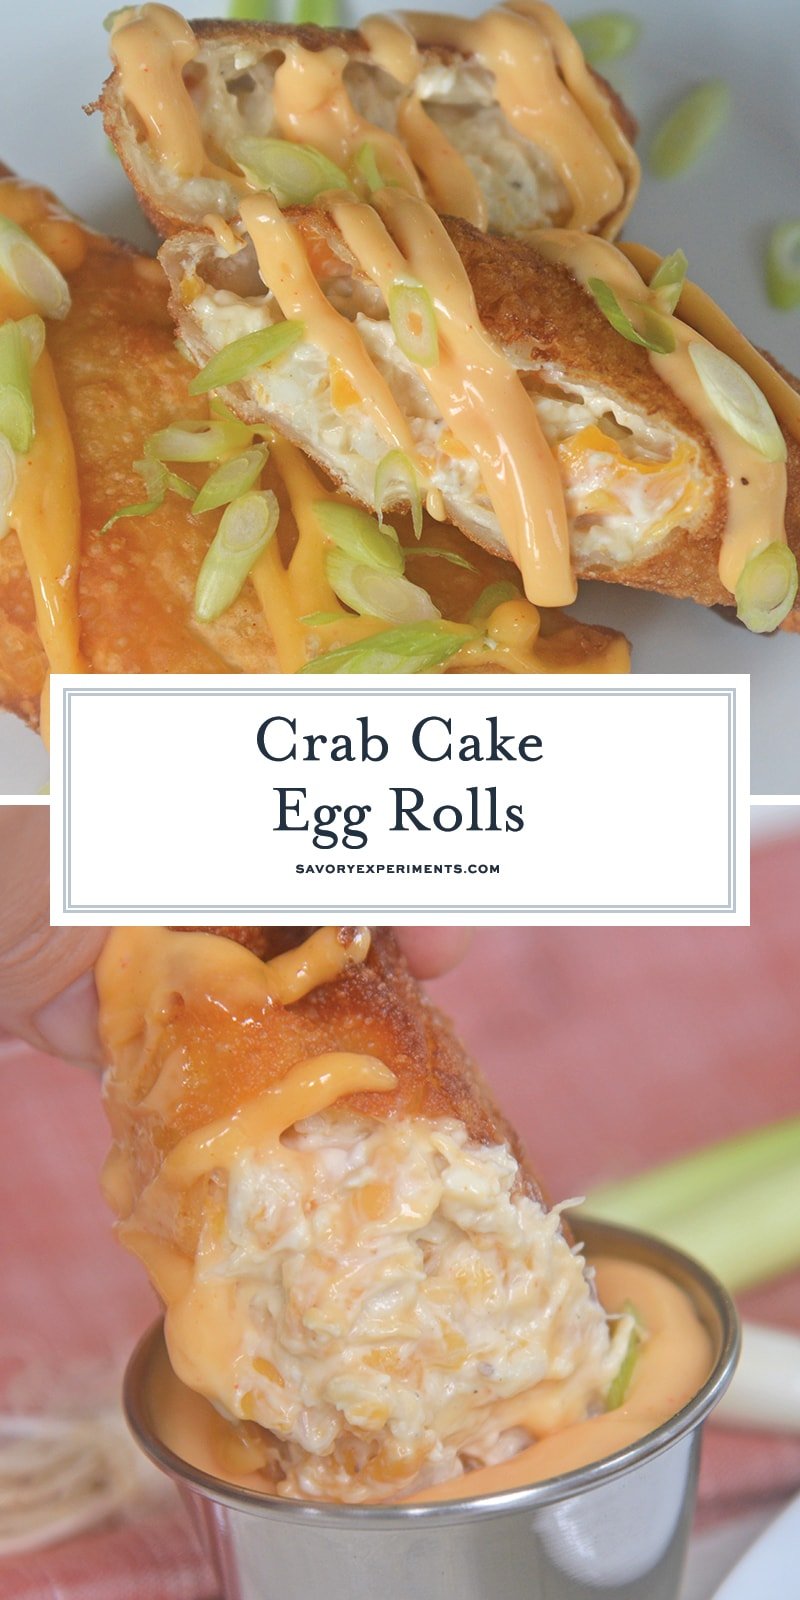 crab cake egg rolls for pinterest